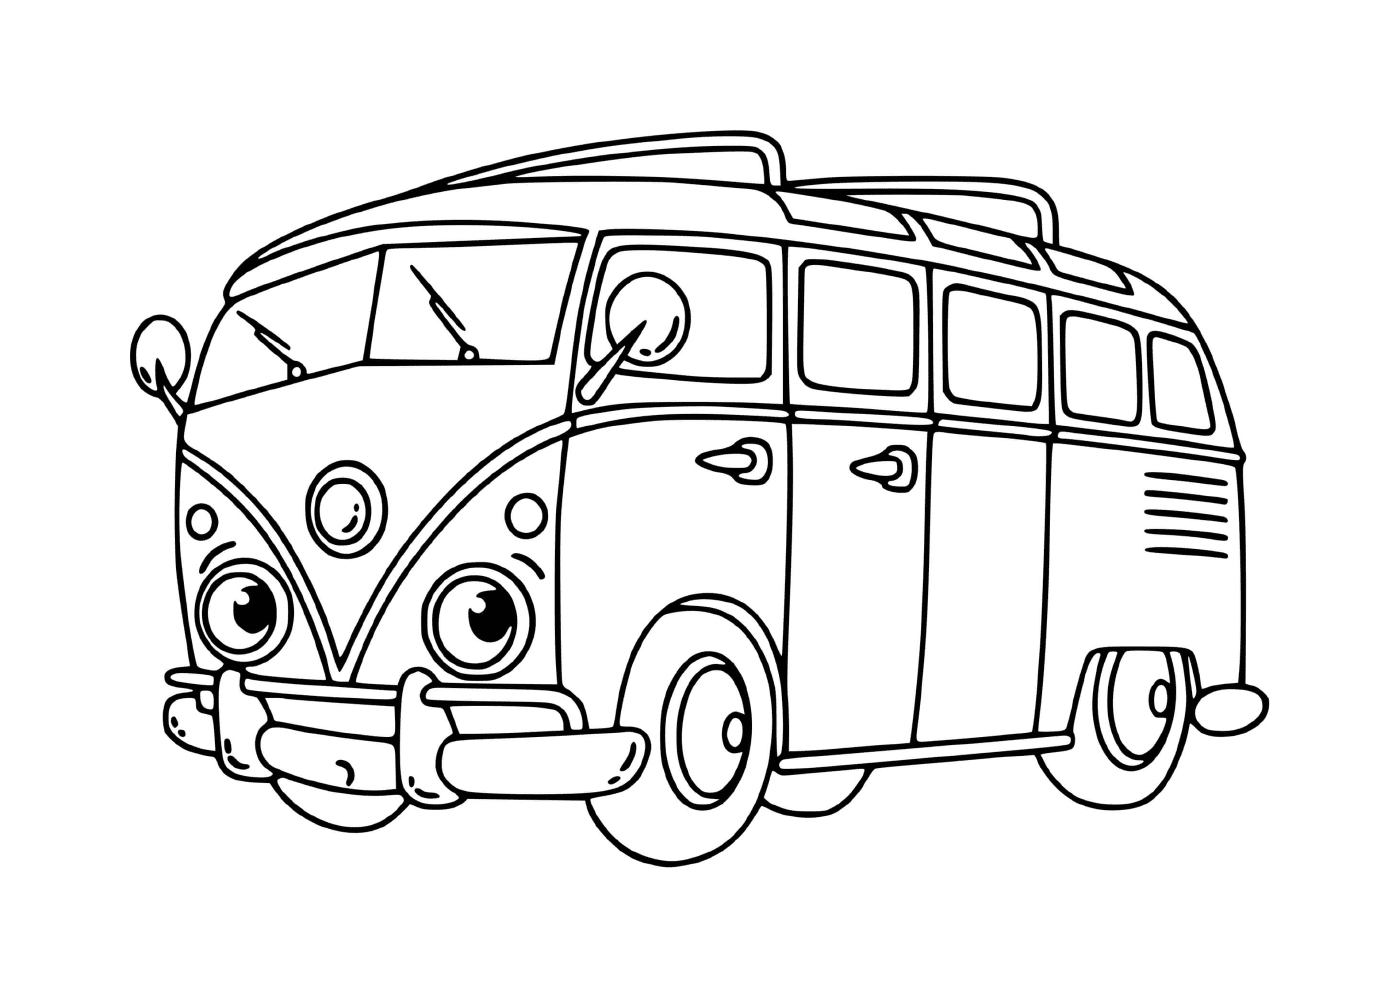  Un minibús Volkswagen 